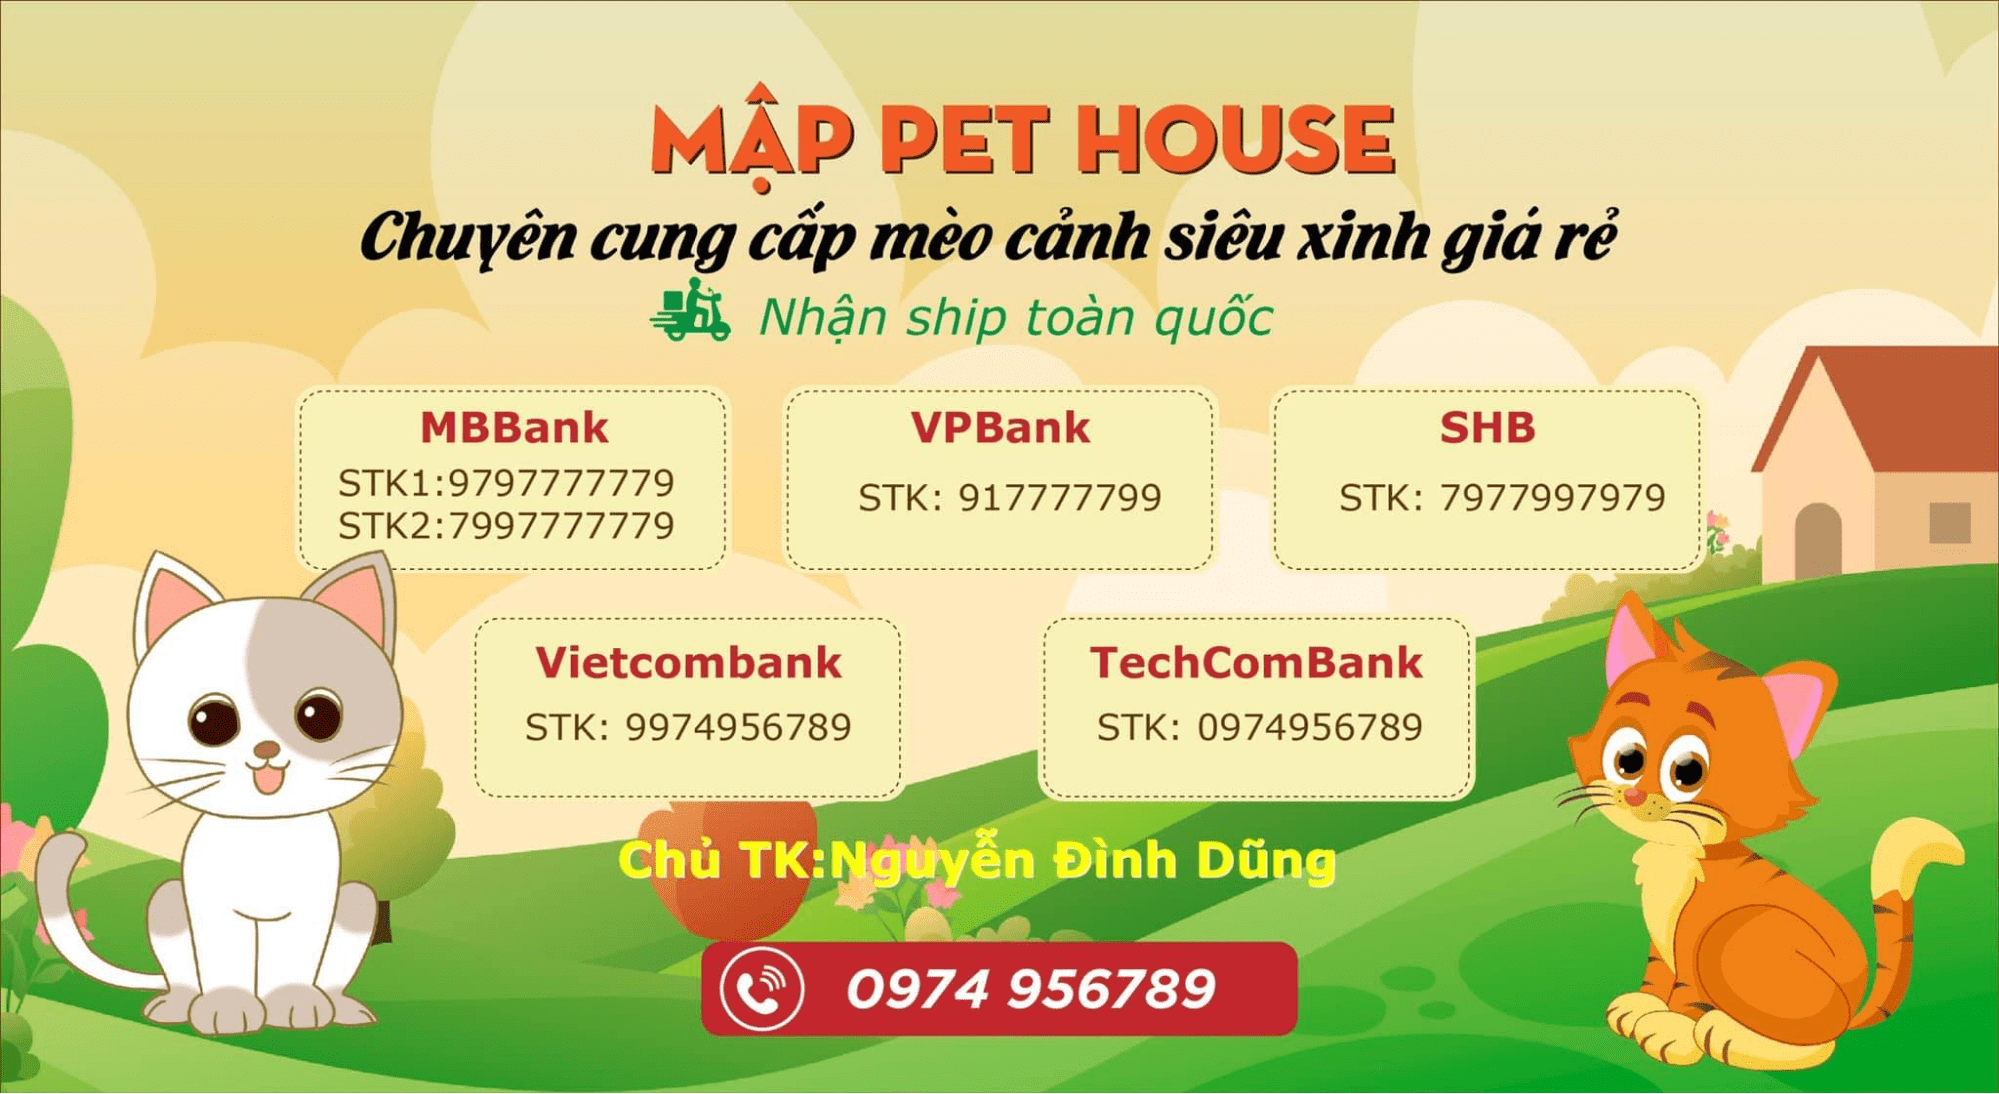 cửa hàng bán mèo ở Hà Nội